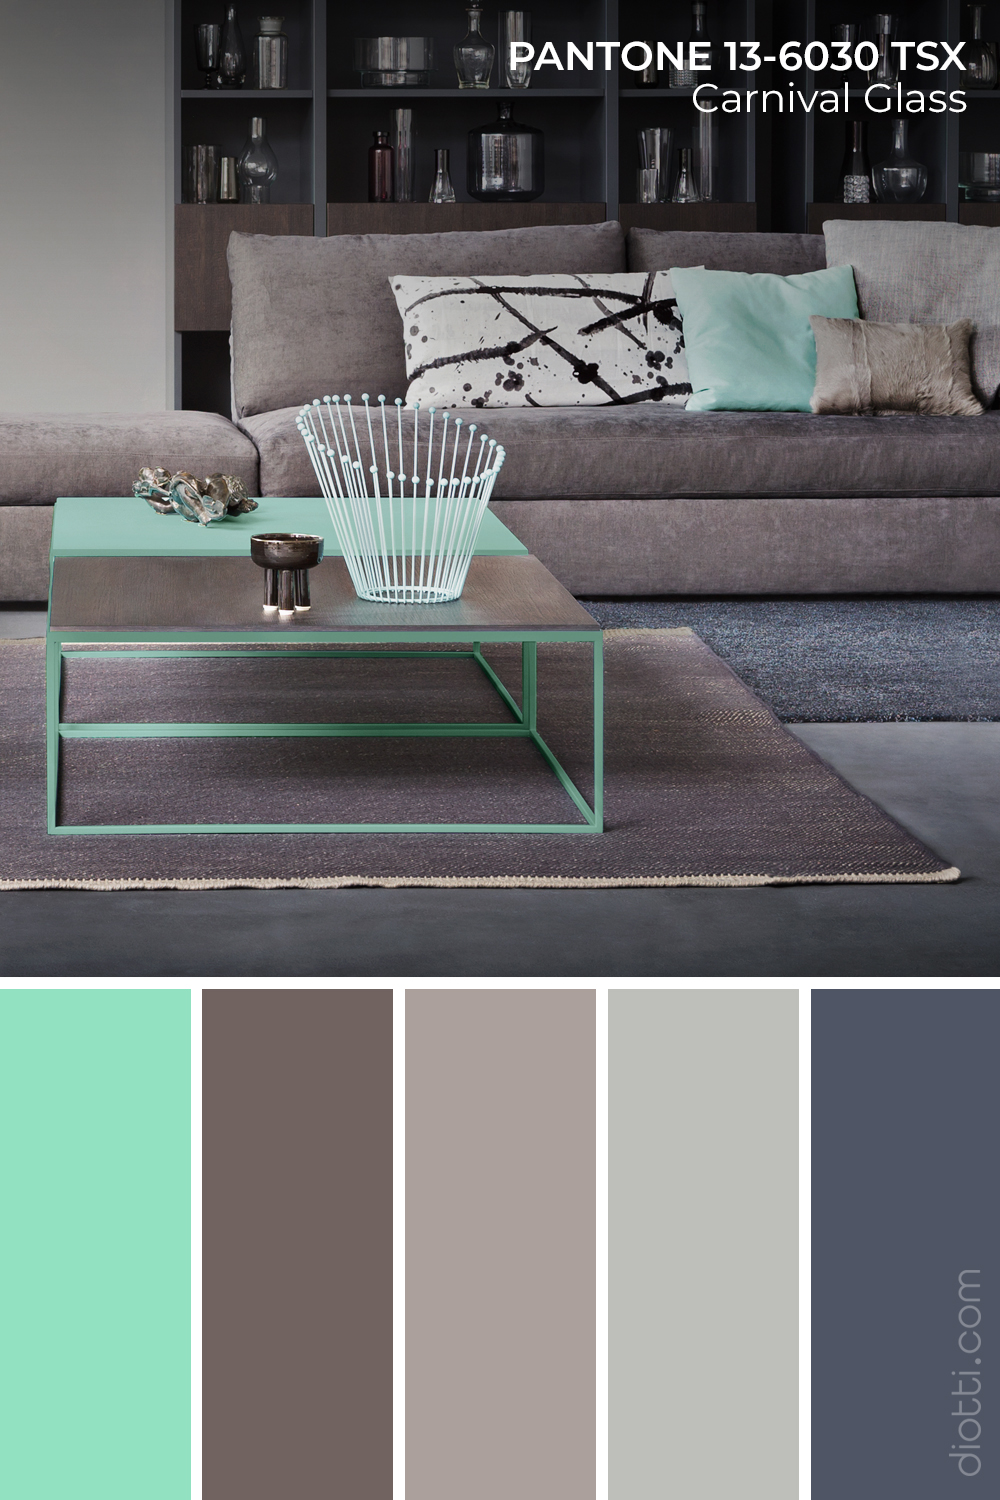 Idee palette colori soggiorno all'insegna del verde acqua smorzato da varie tonalità di grigio.